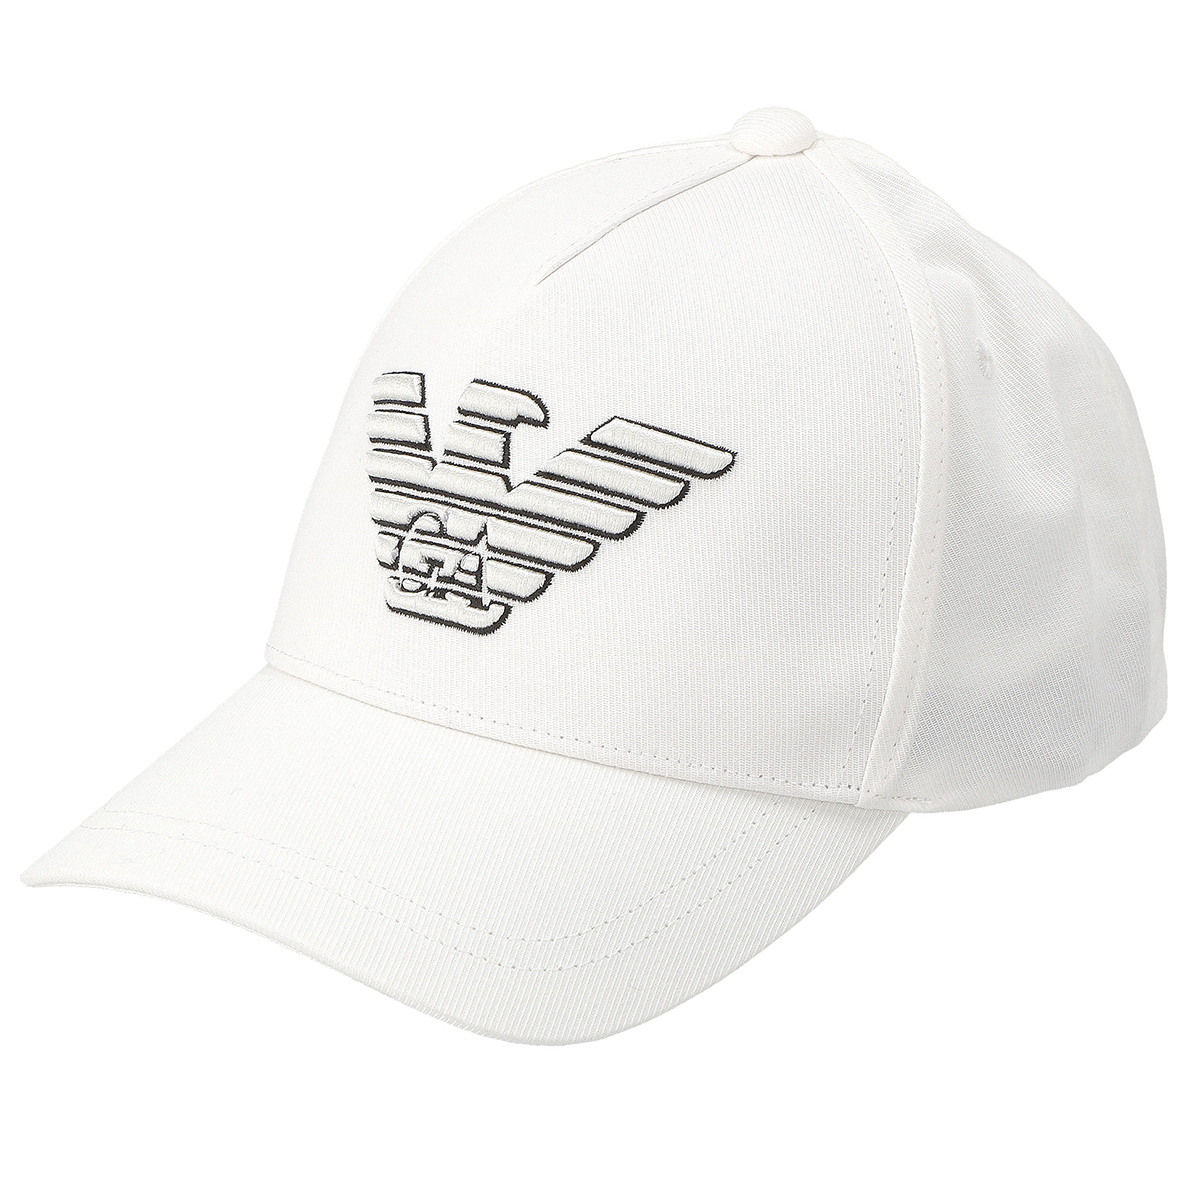 エンポリオアルマーニ EMPORIO ARMANI キャップ 帽子 6278692R556-41610 ベースボールキャップ メンズ ホワイト ブランド ベースボールキ